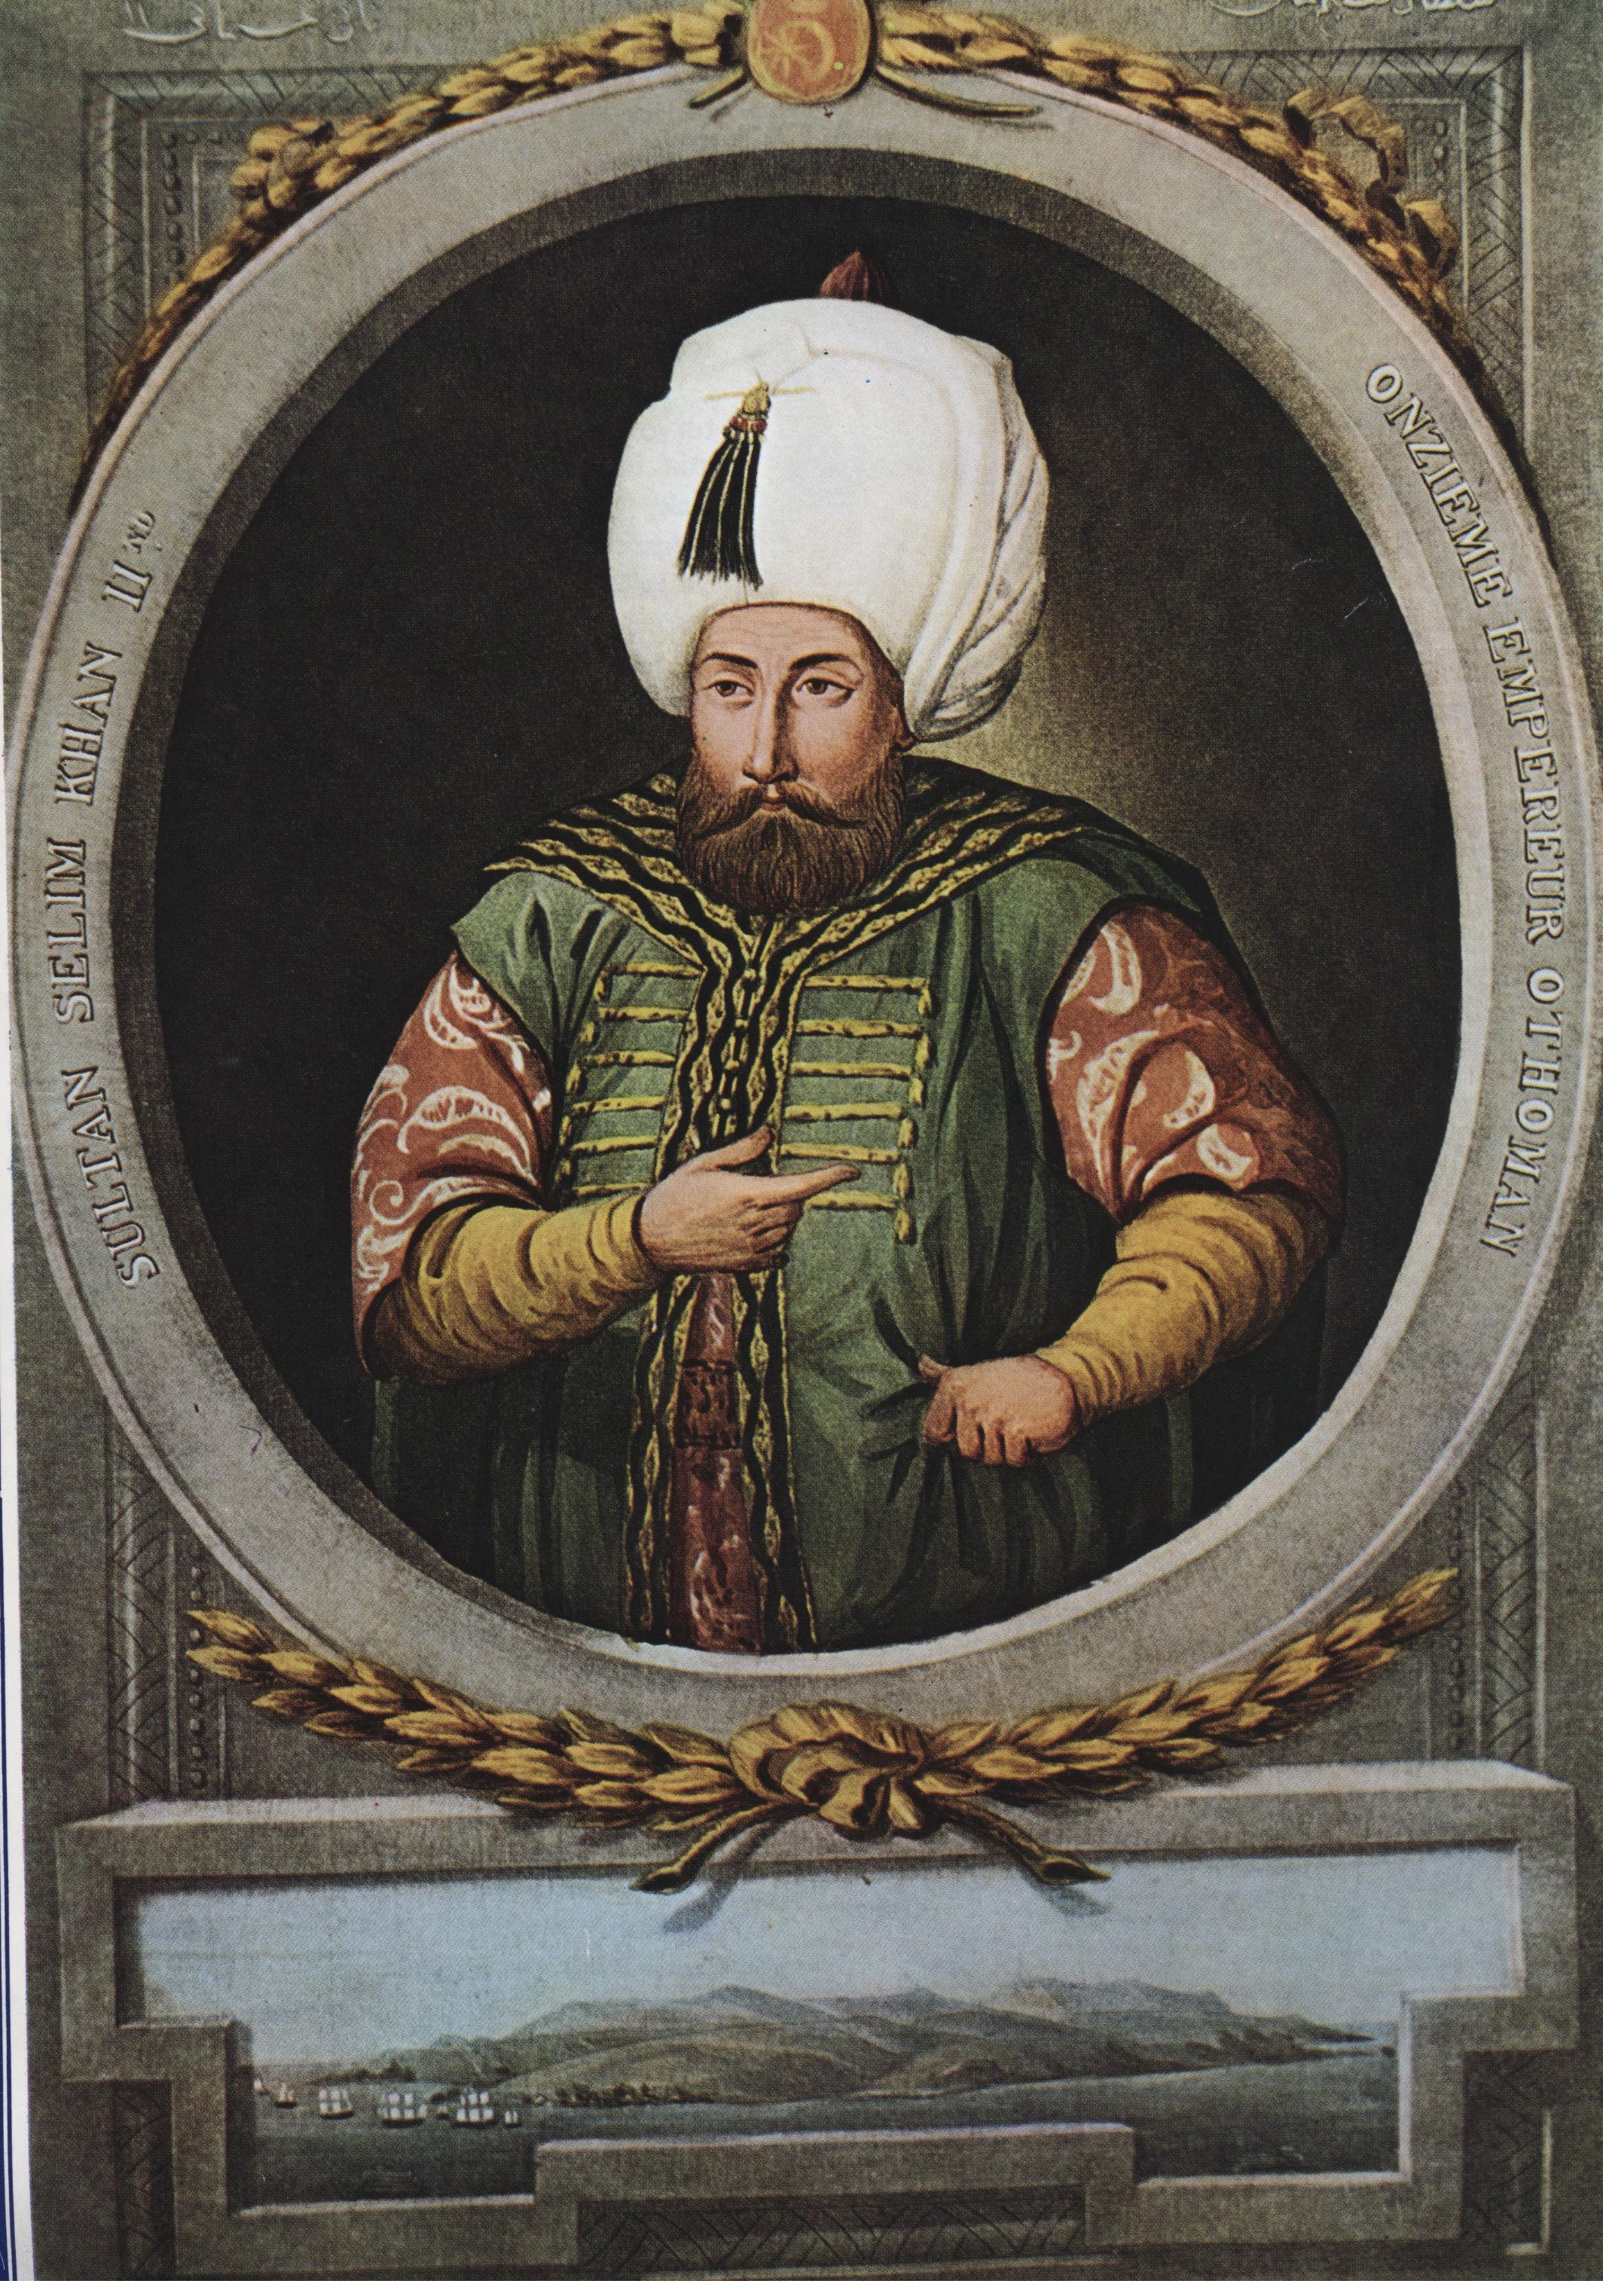 Szelim herceg, az uralkodó utódja II. Szelim szultánként